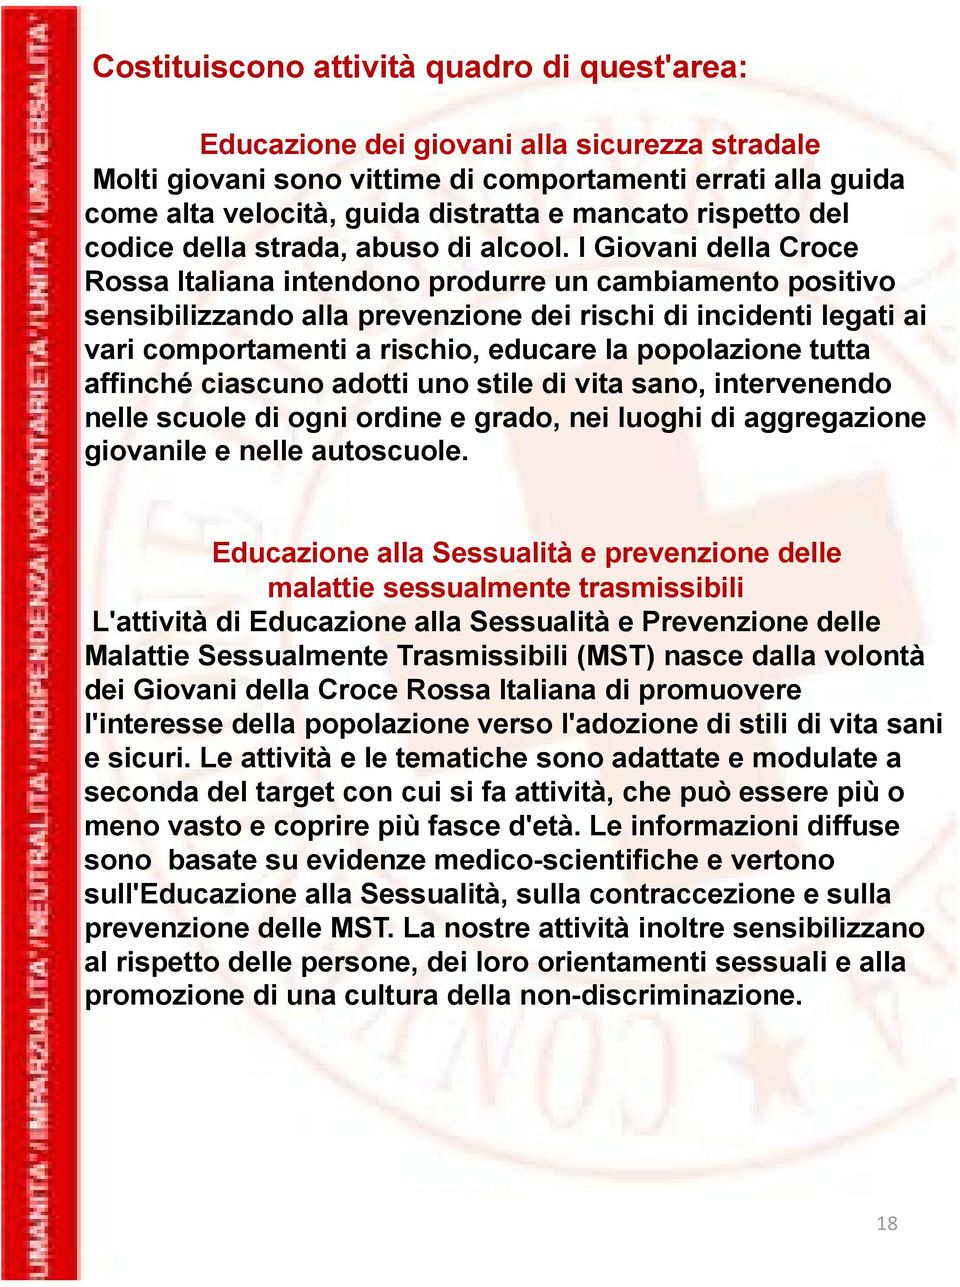 I Giovani della Croce Rossa Italiana intendono produrre un cambiamento positivo sensibilizzando alla prevenzione dei rischi di incidenti legati ai vari comportamenti a rischio, educare la popolazione